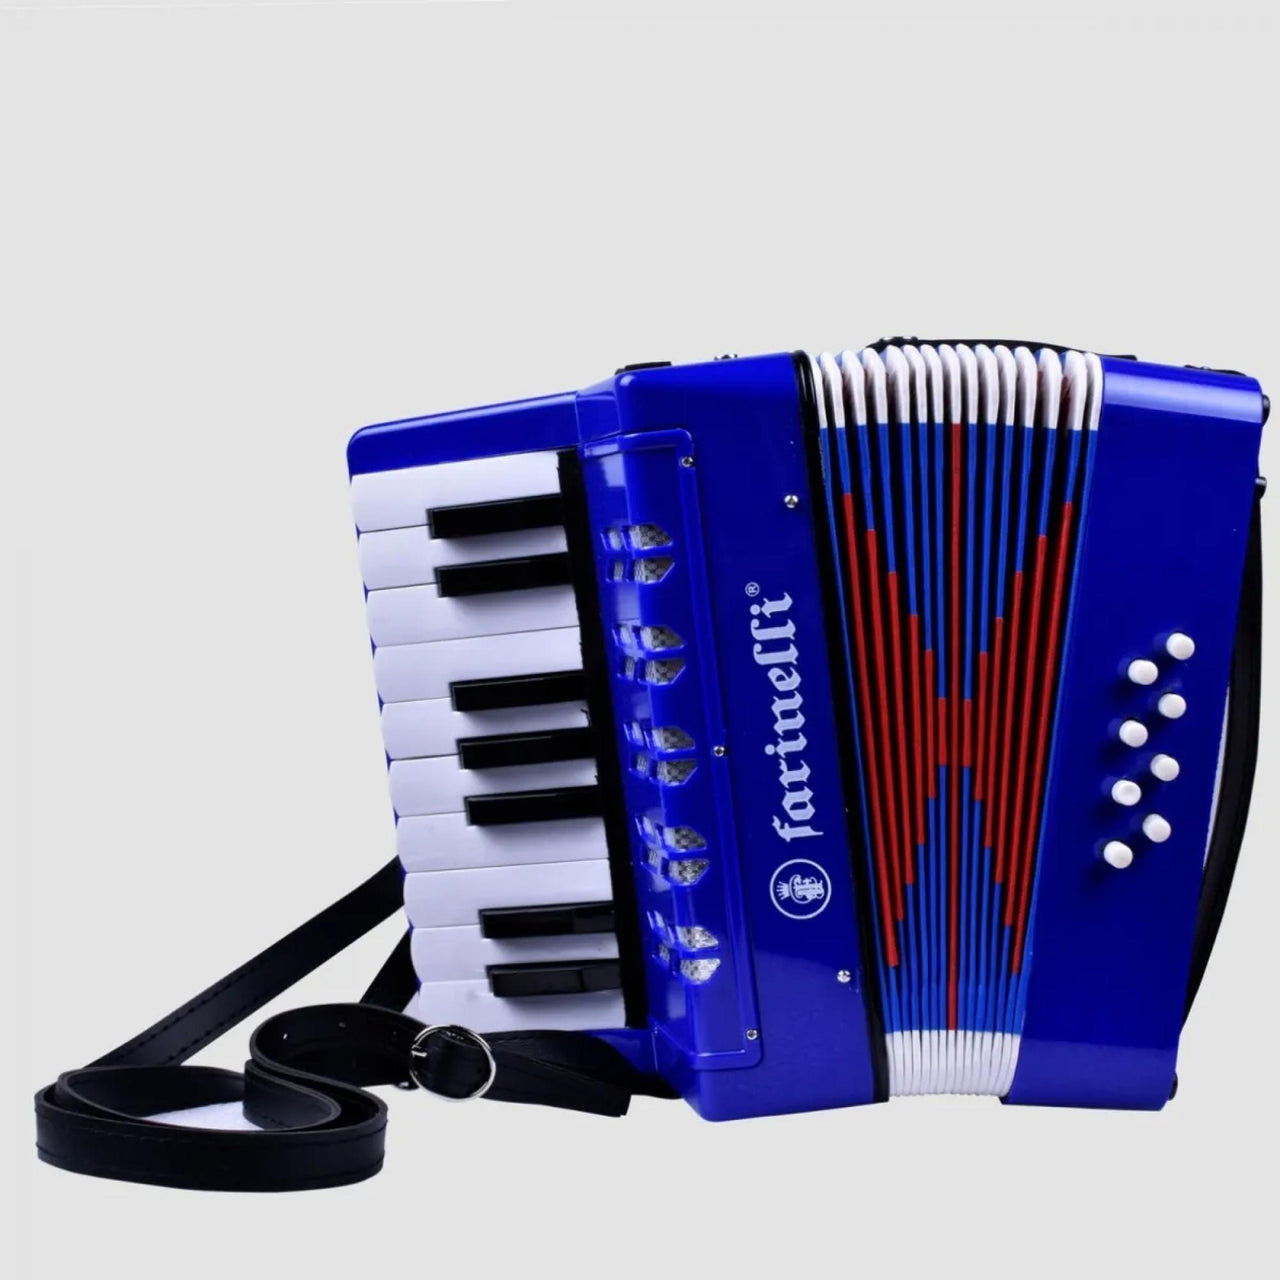 acordeon infantil farinelli 8 bajos 17 teclas azul, acjrfazn